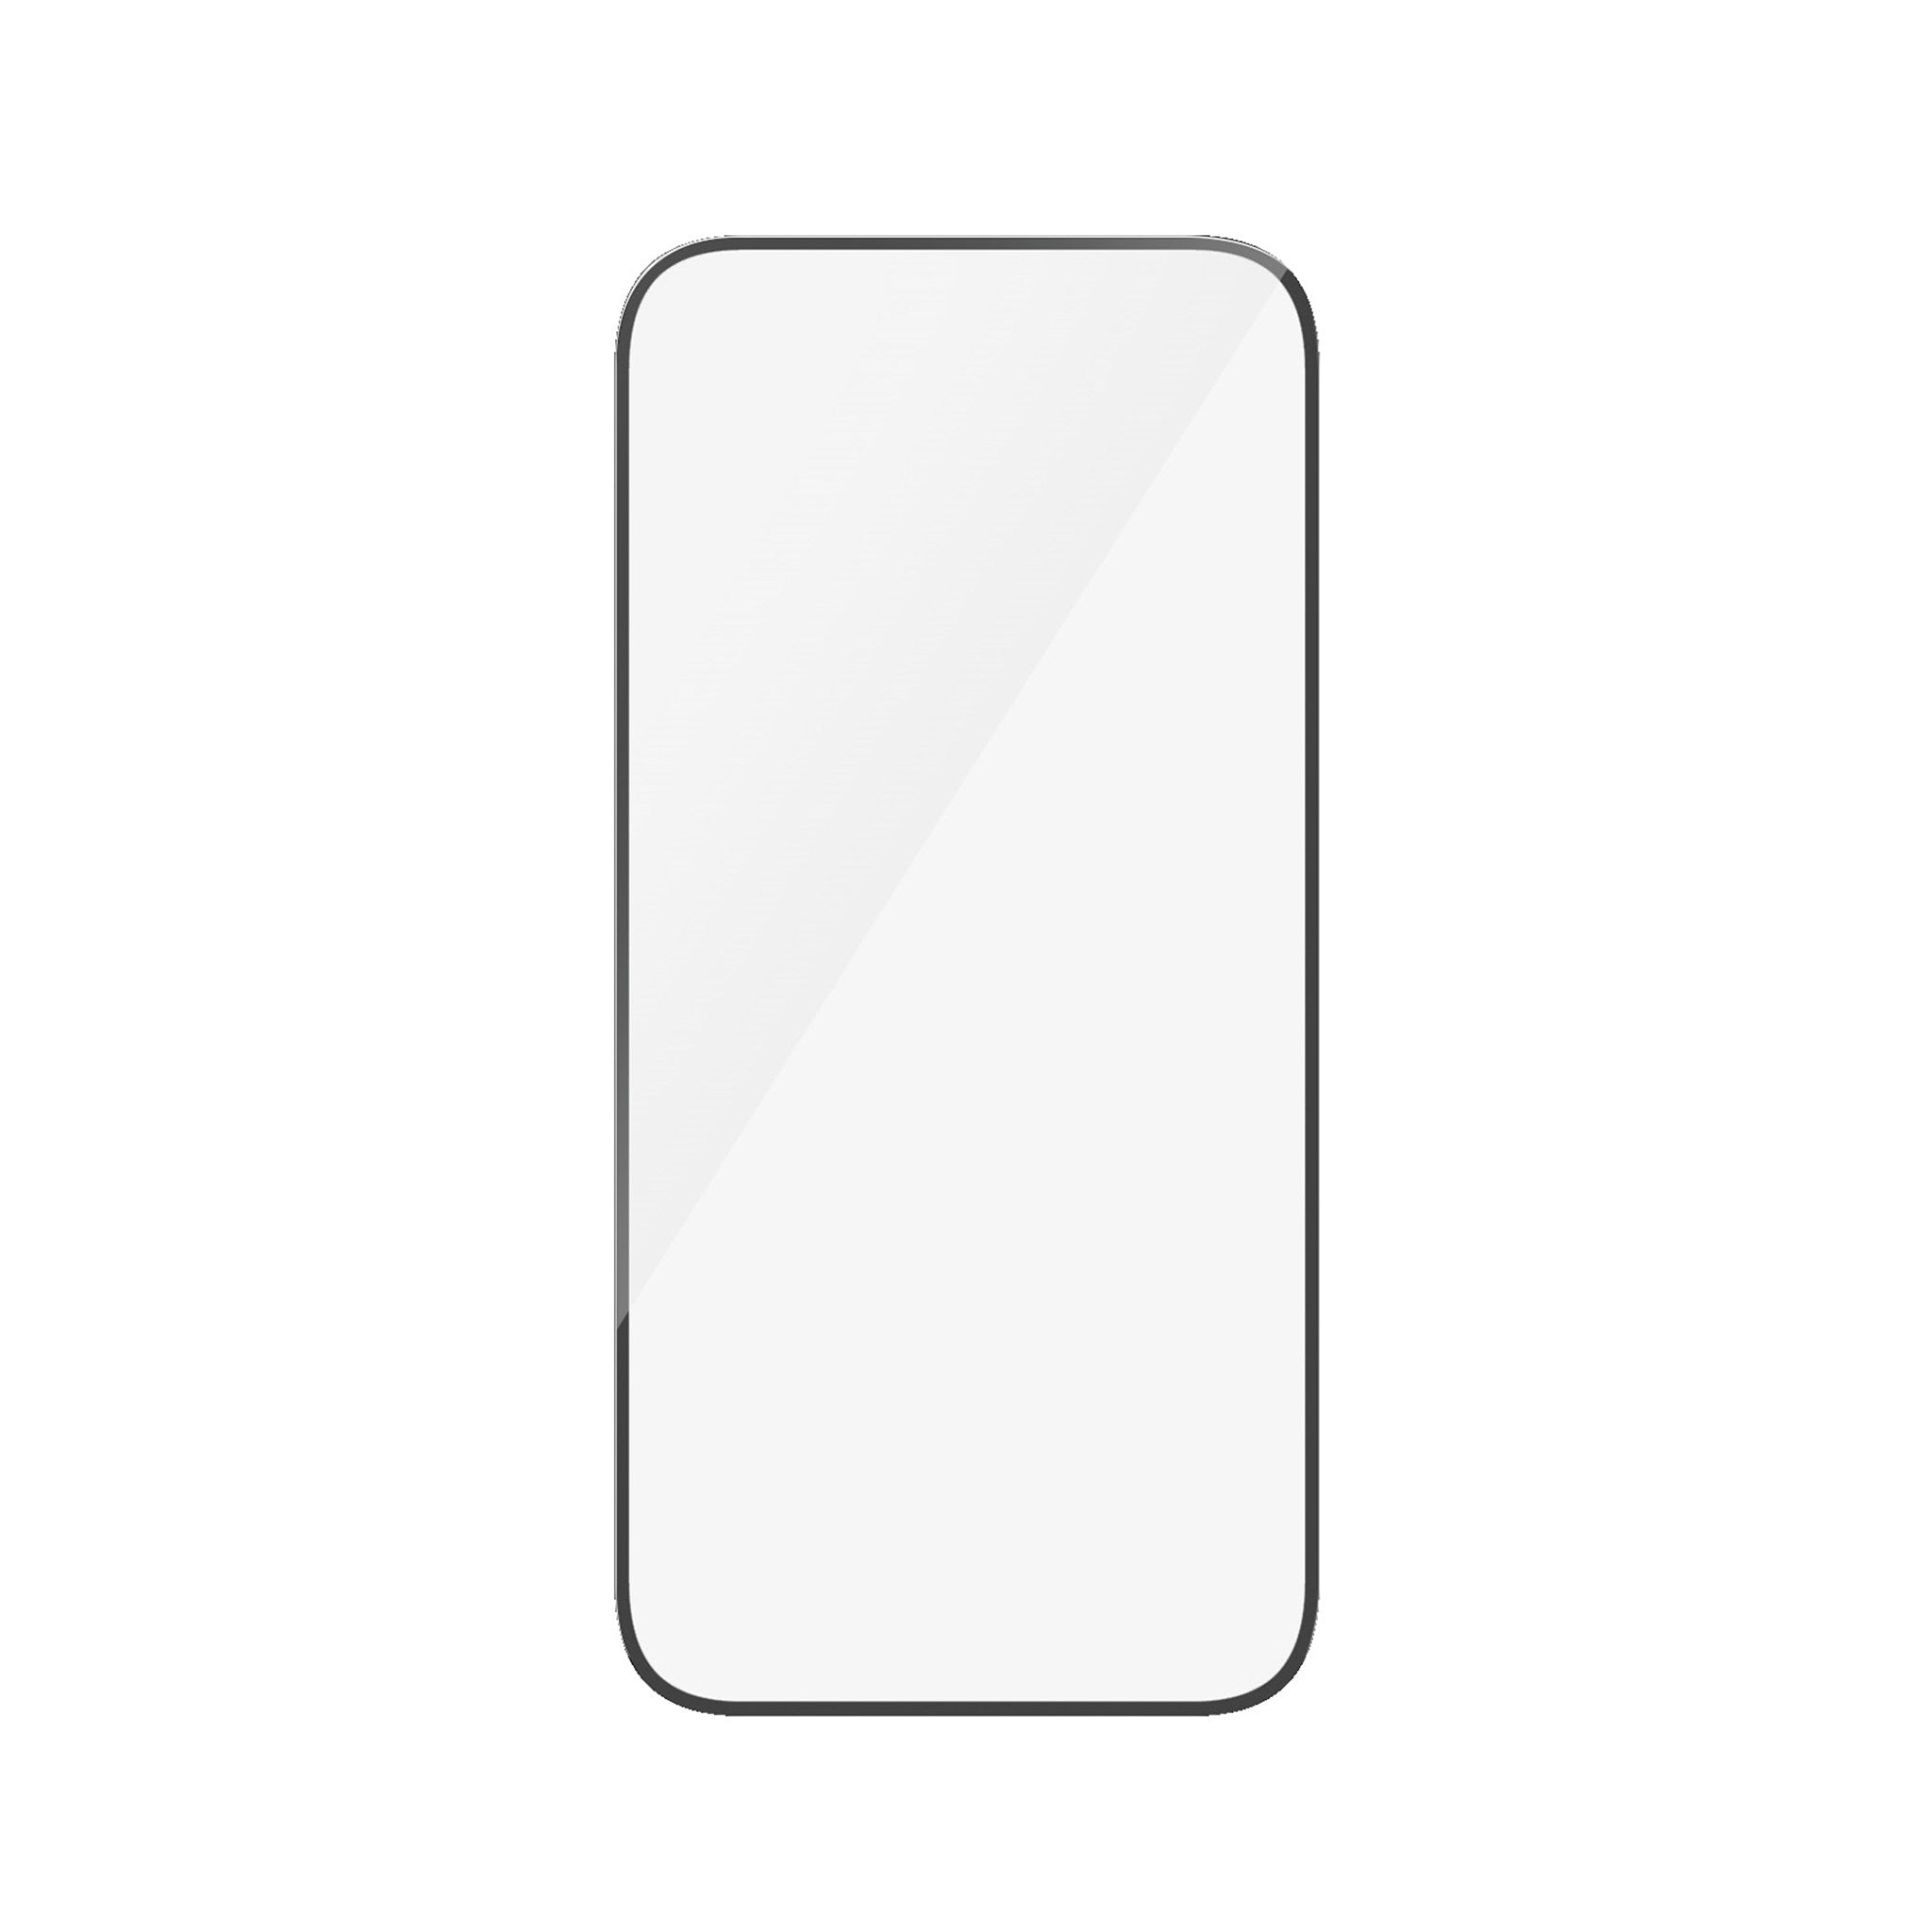 PANZERGLASS Ultra-Wide Fit 15) Displayschutz(für iPhone Apple